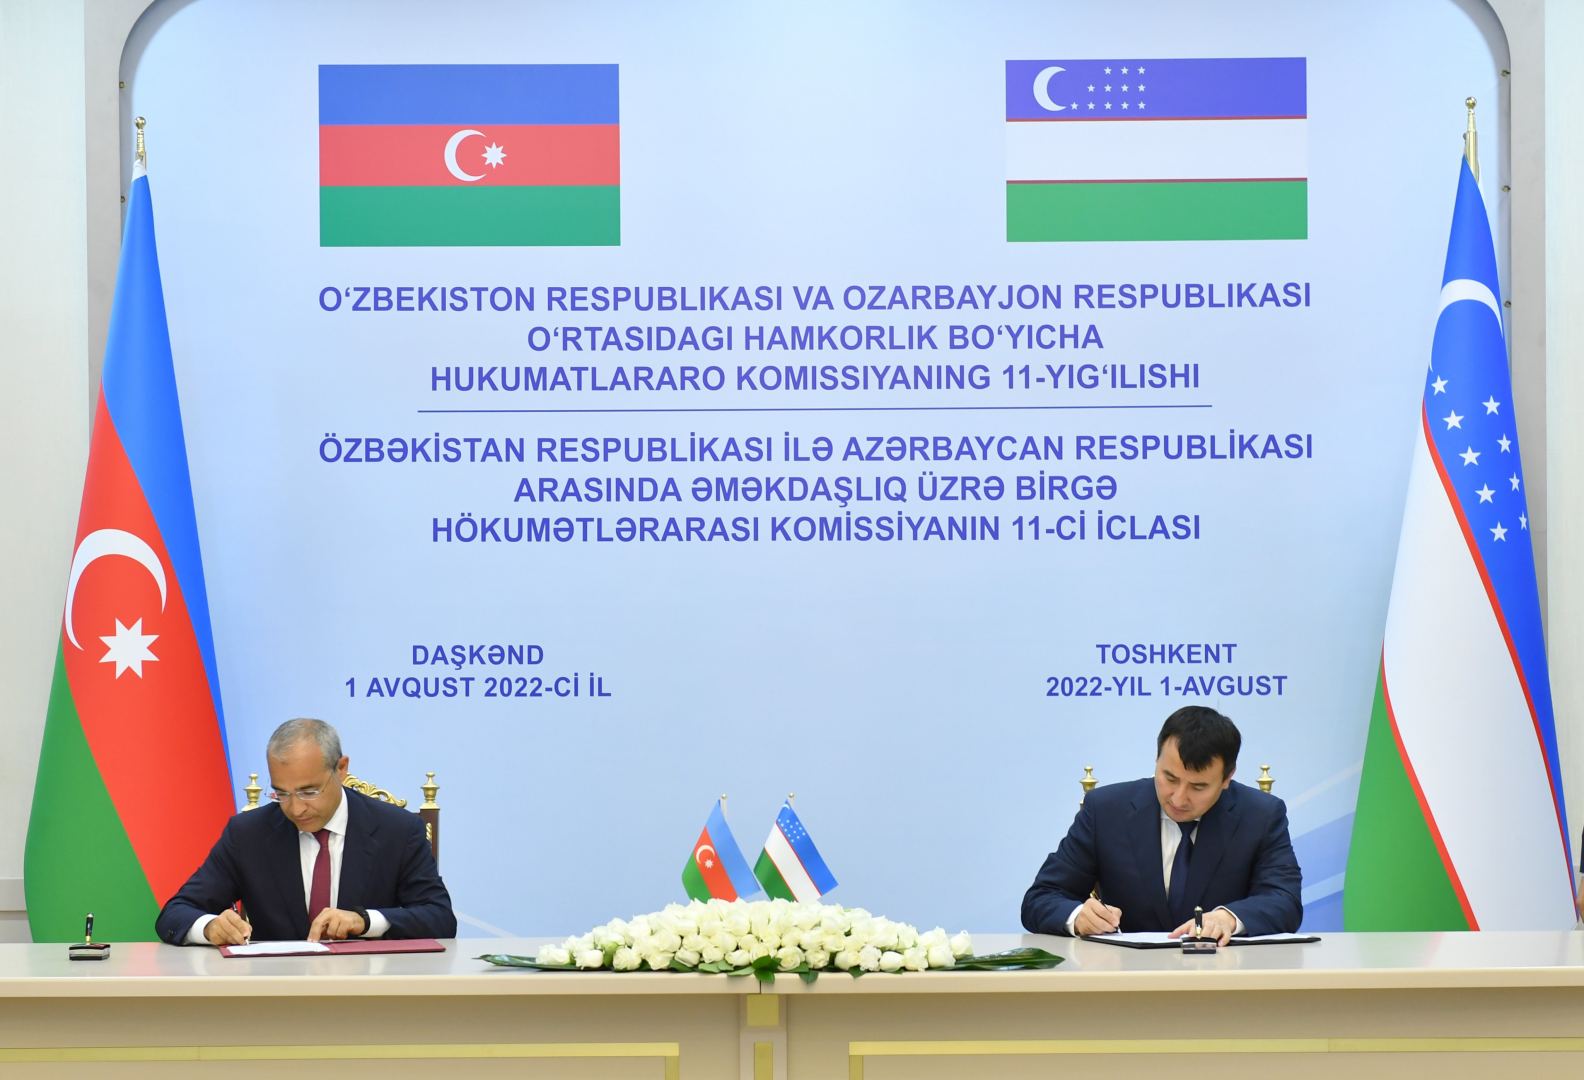 Подписаны меморандумы между Агентством по развитию экономических зон Азербайджана и узбекскими ассоциациями (ФОТО)